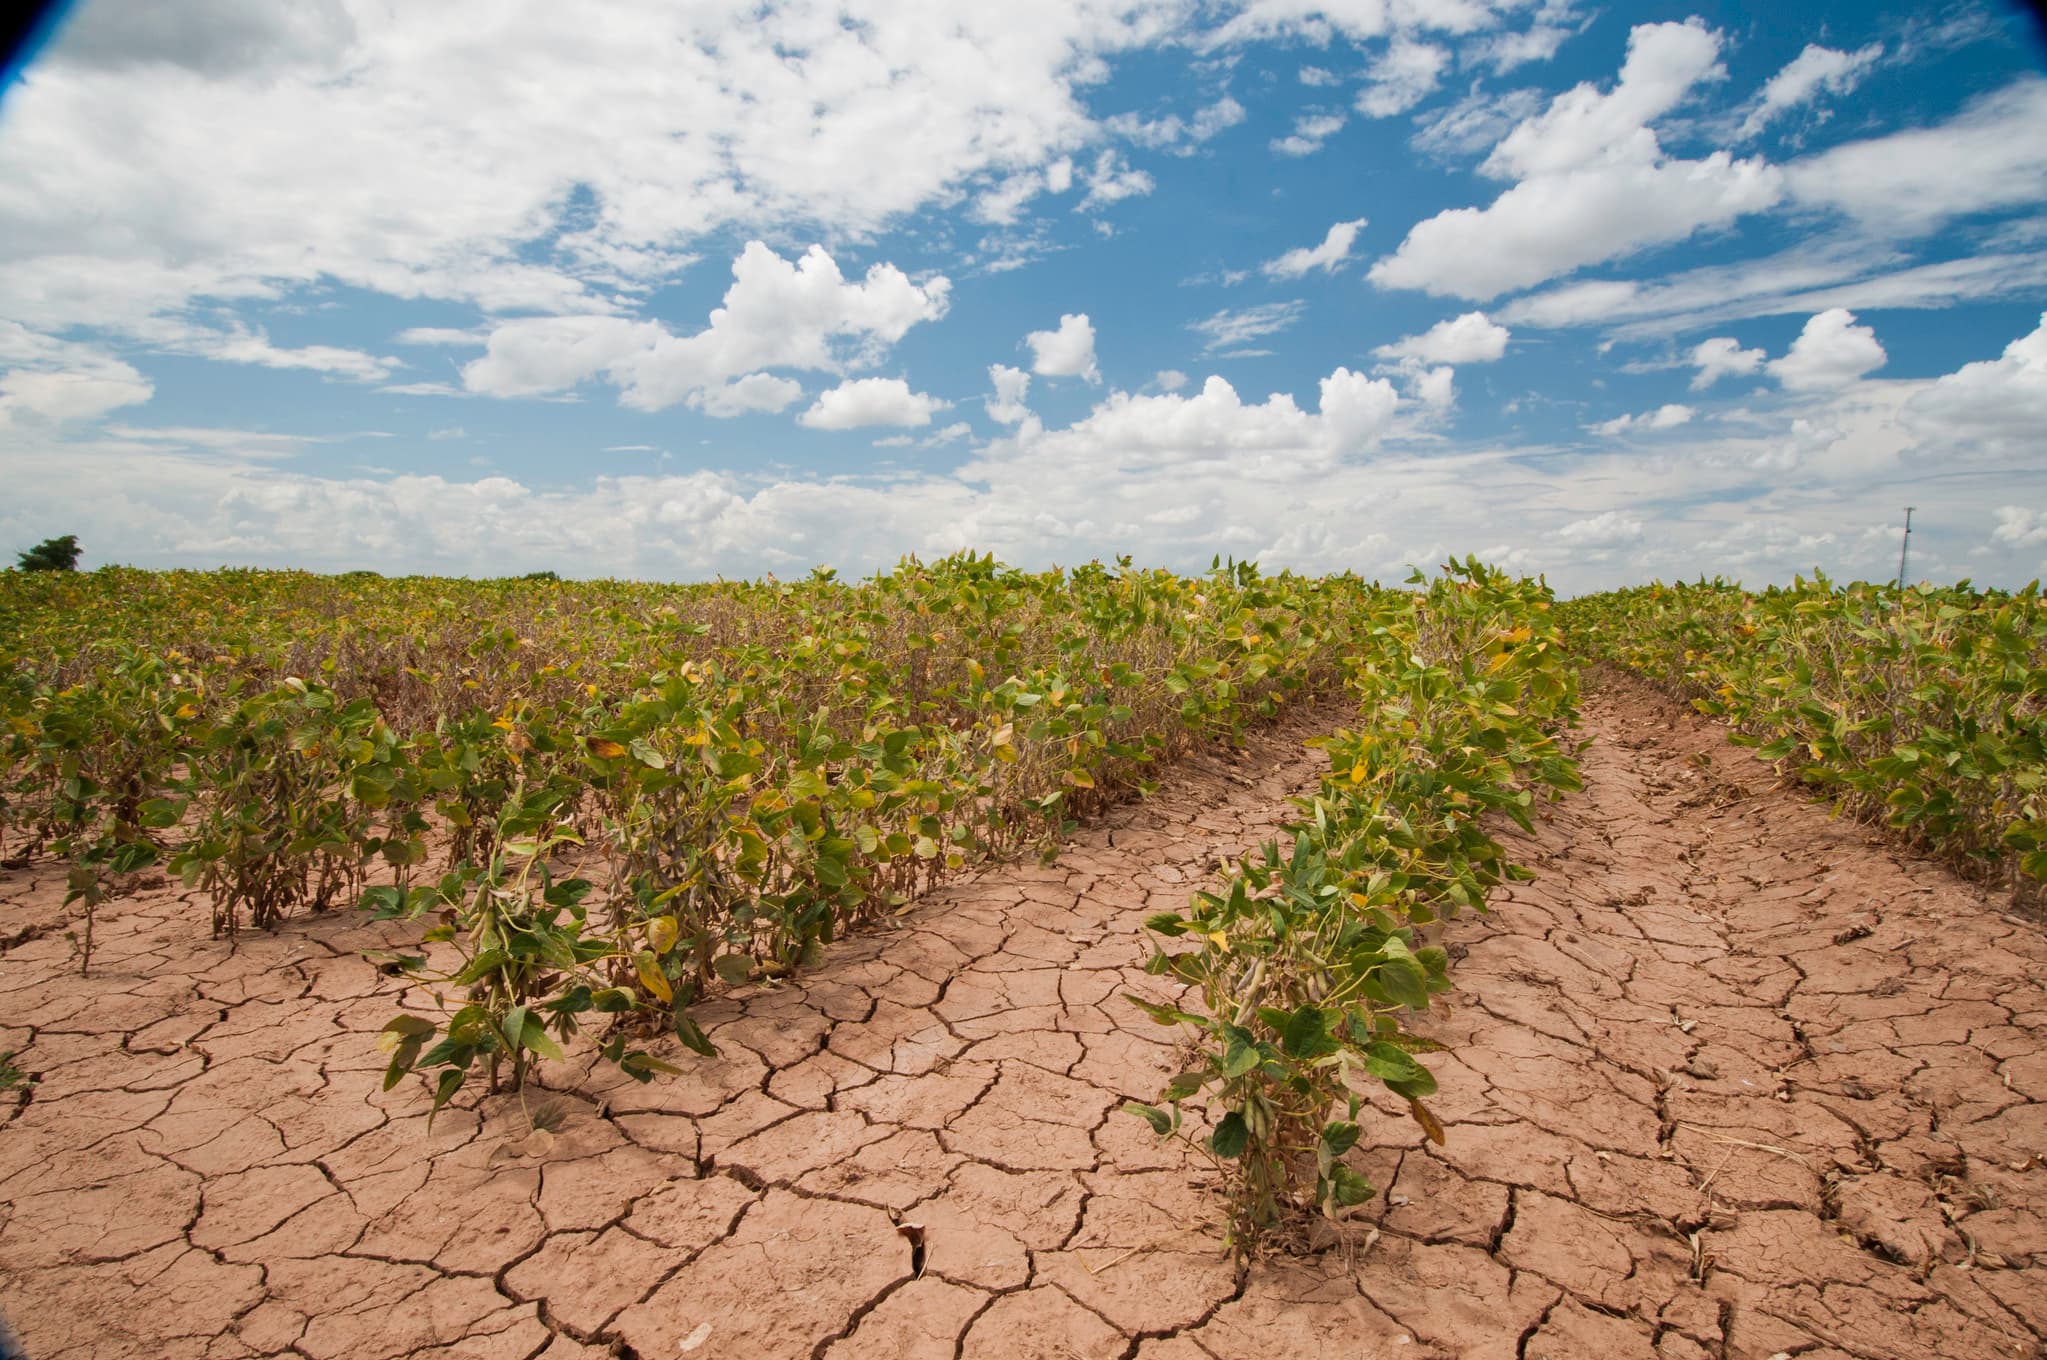 soybean field in a drought